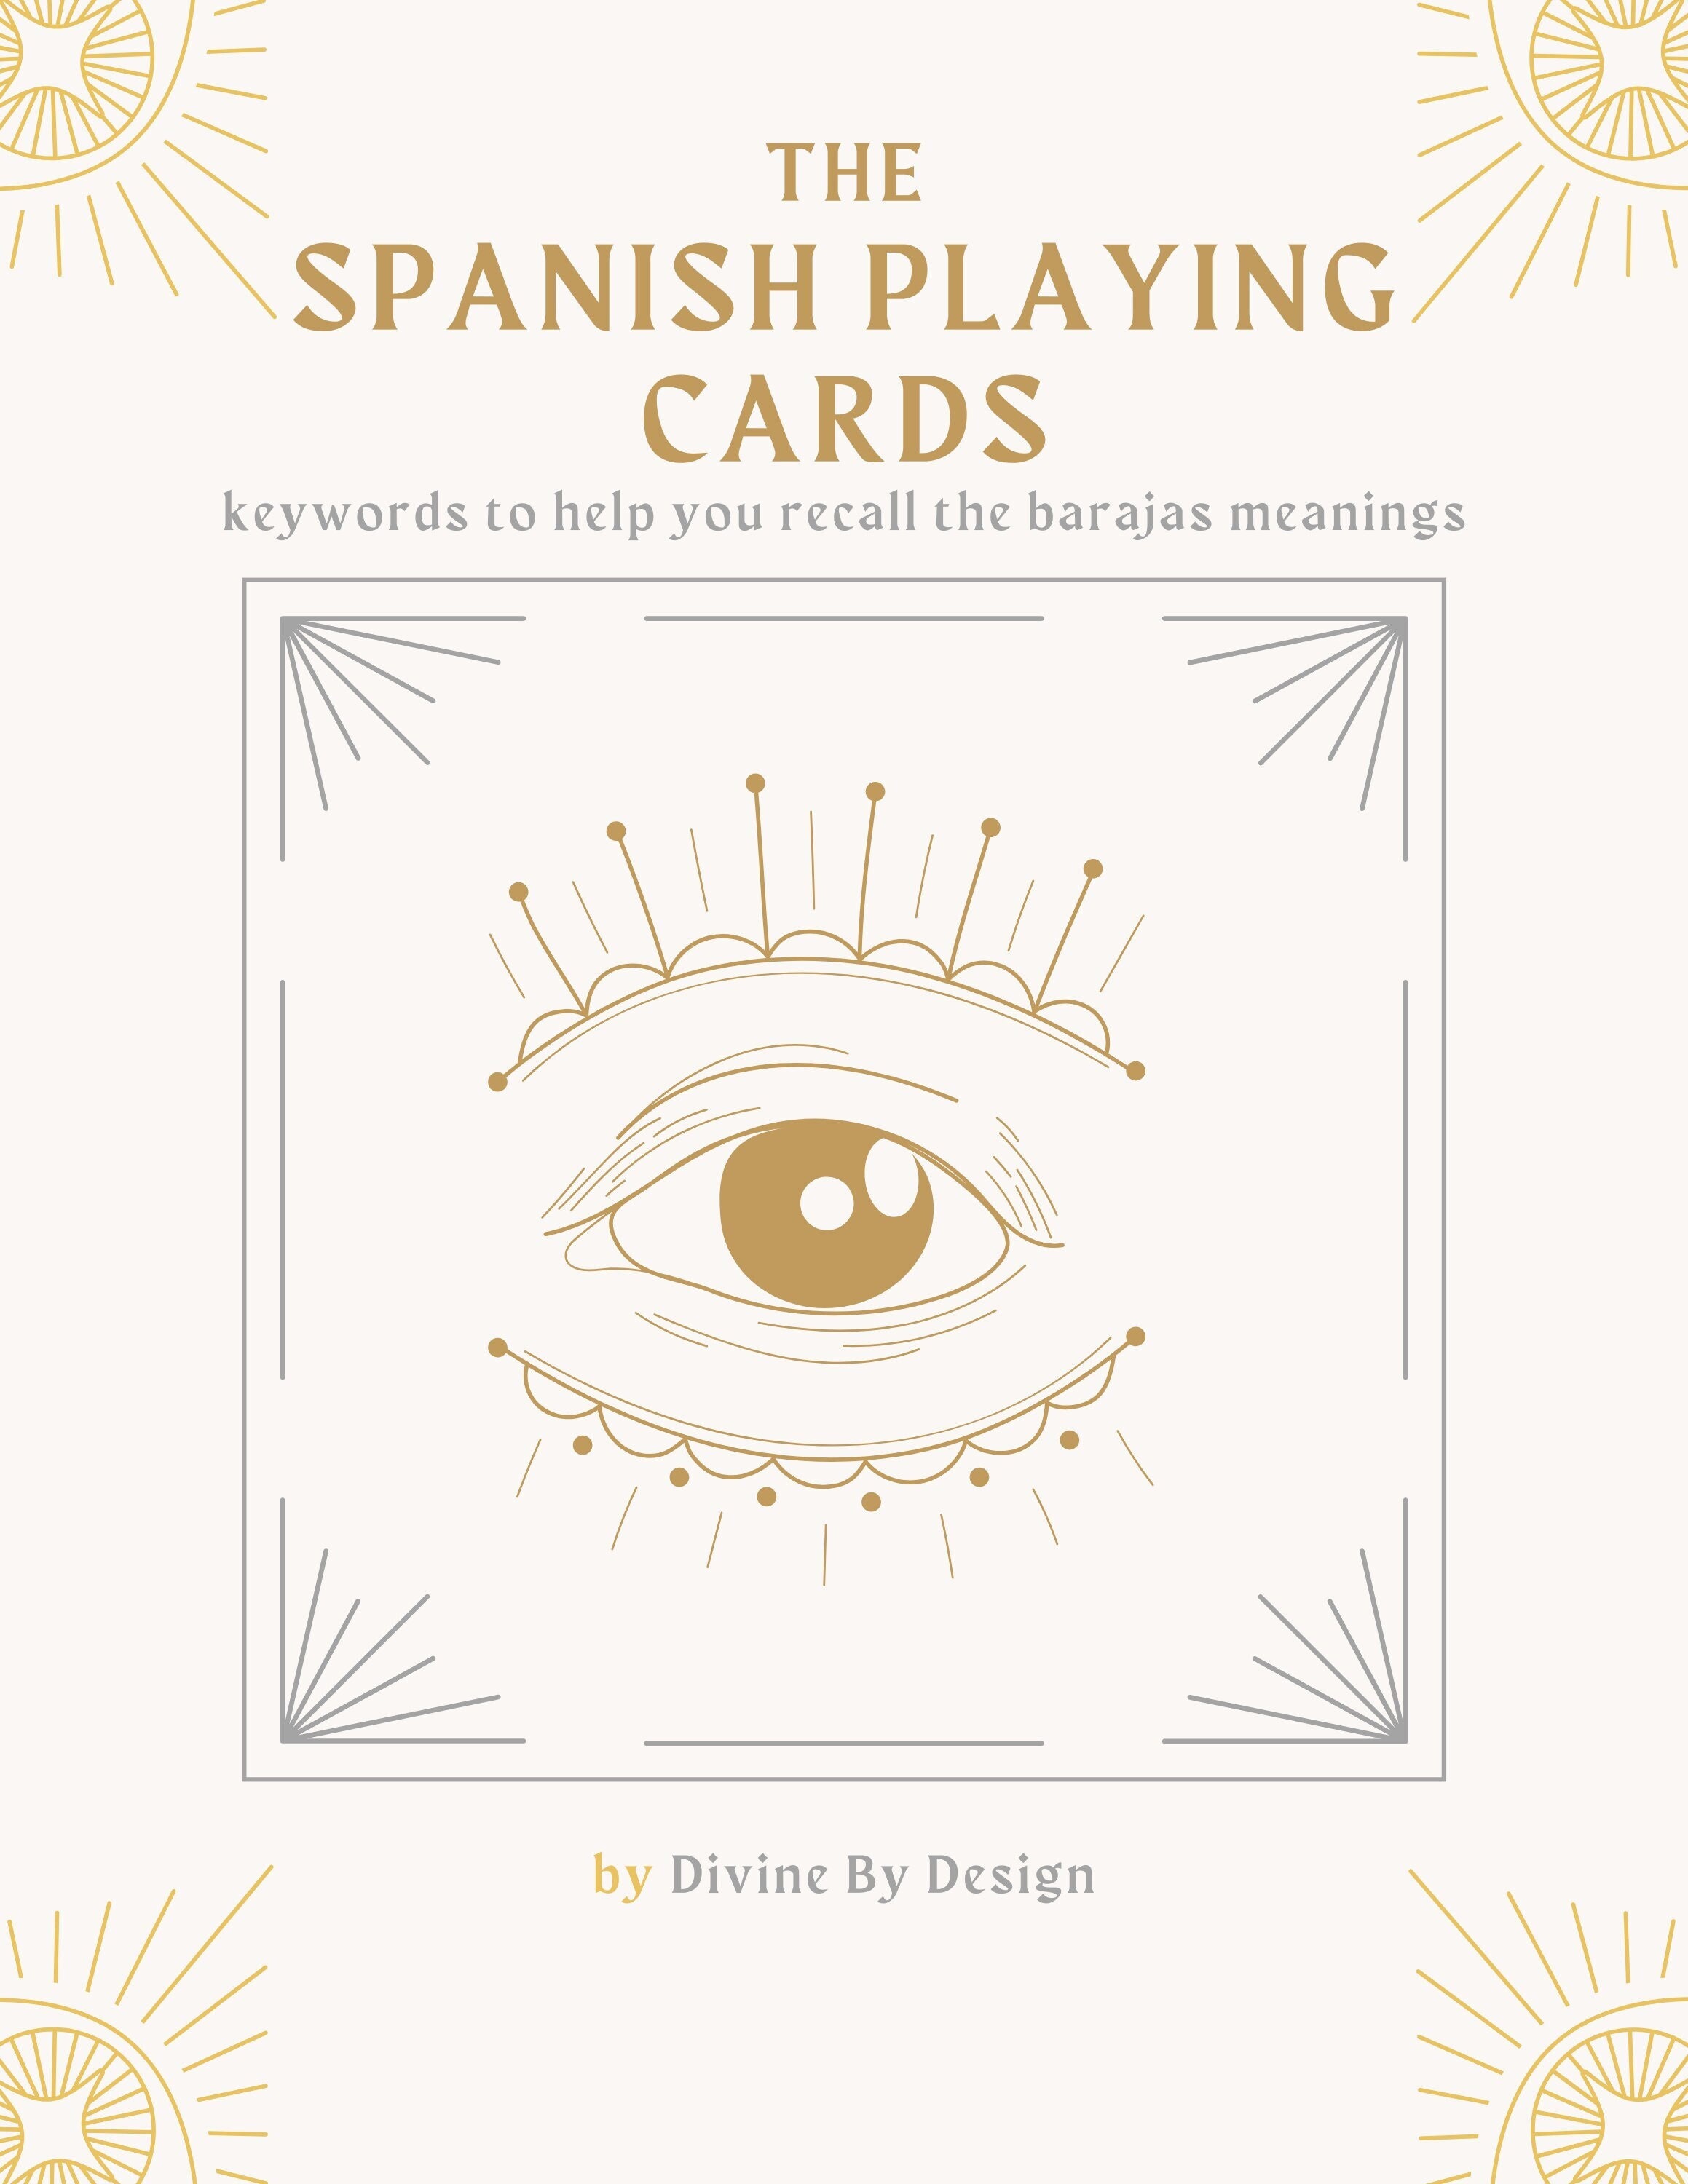 baraja de cartas de tarot. spanish tarot biling - Buy Antique